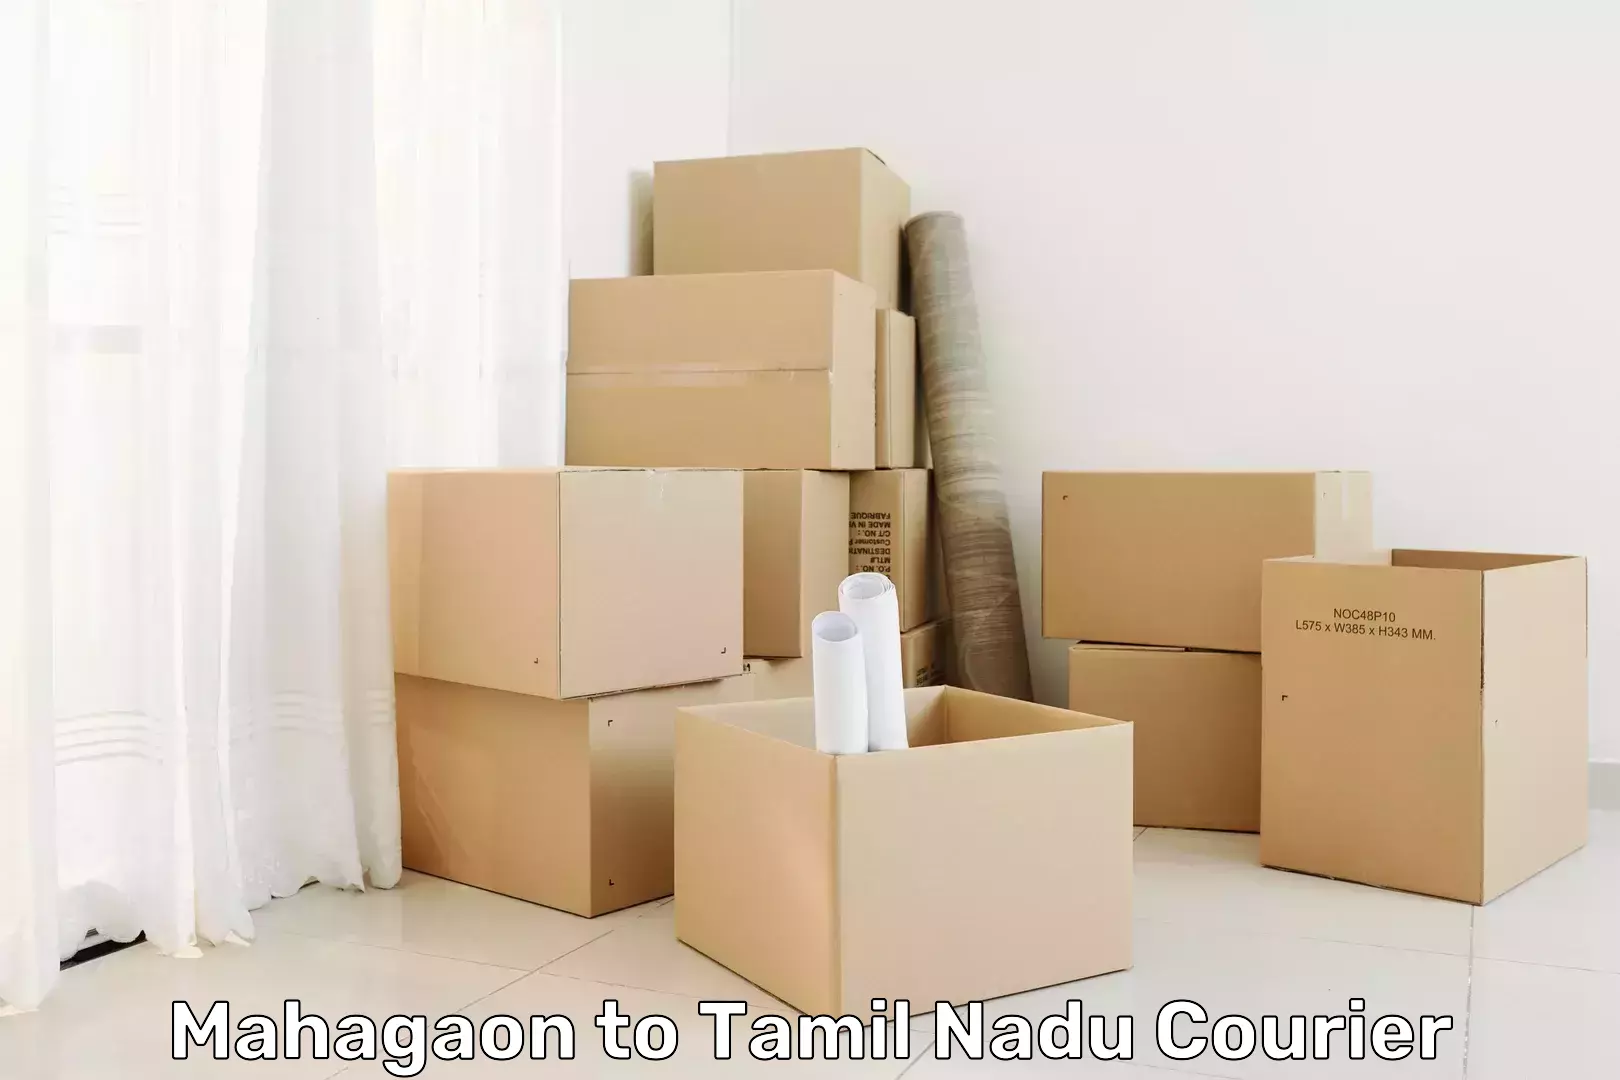 Courier service innovation Mahagaon to Thiruvadanai